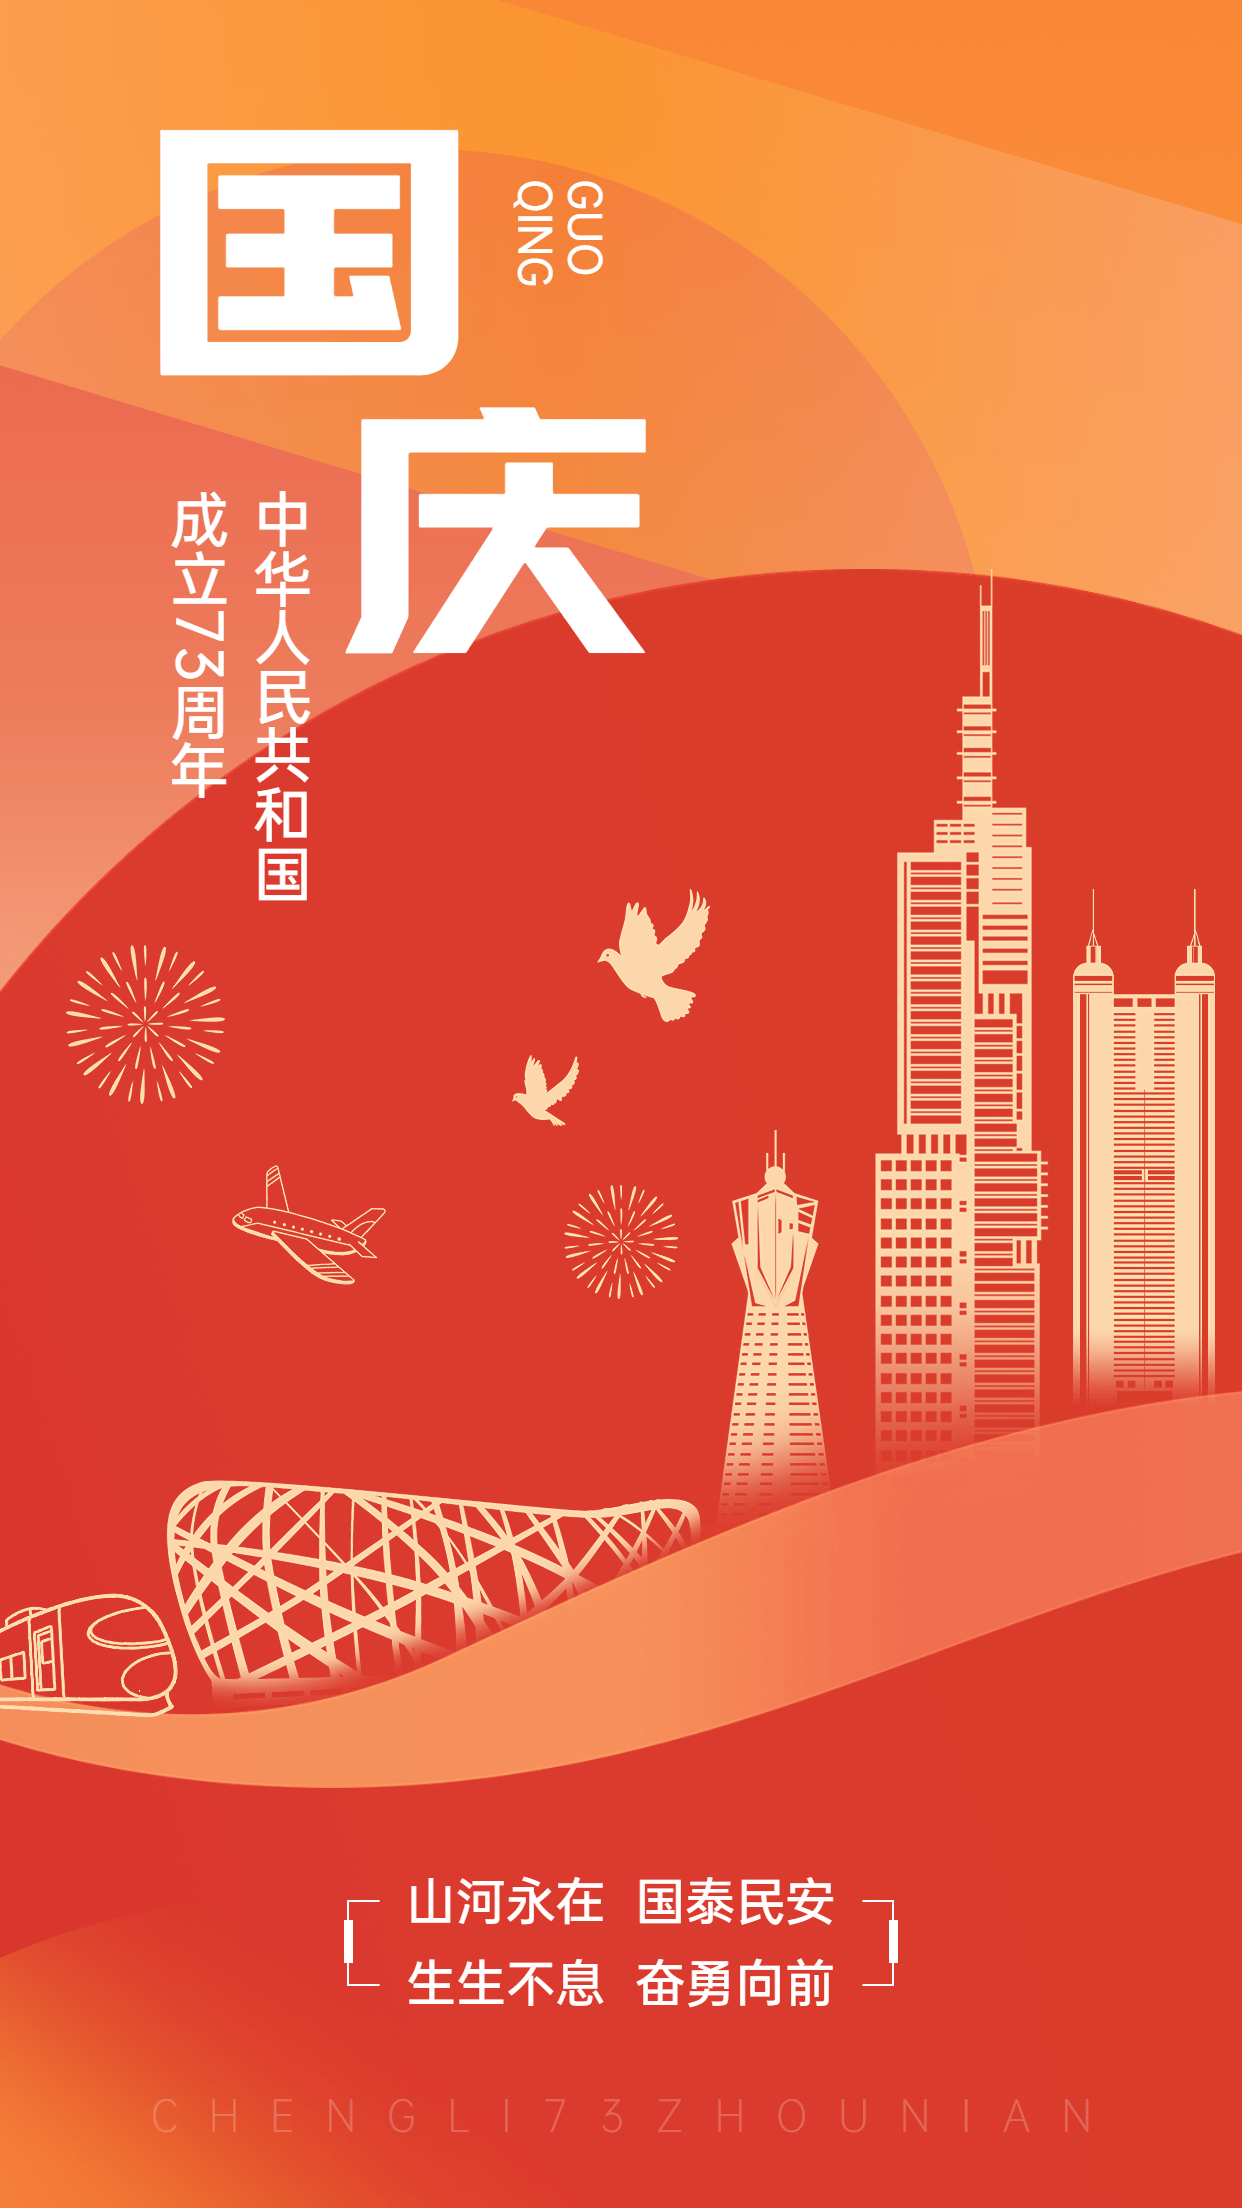 国庆节节日祝福排版手机海报预览效果